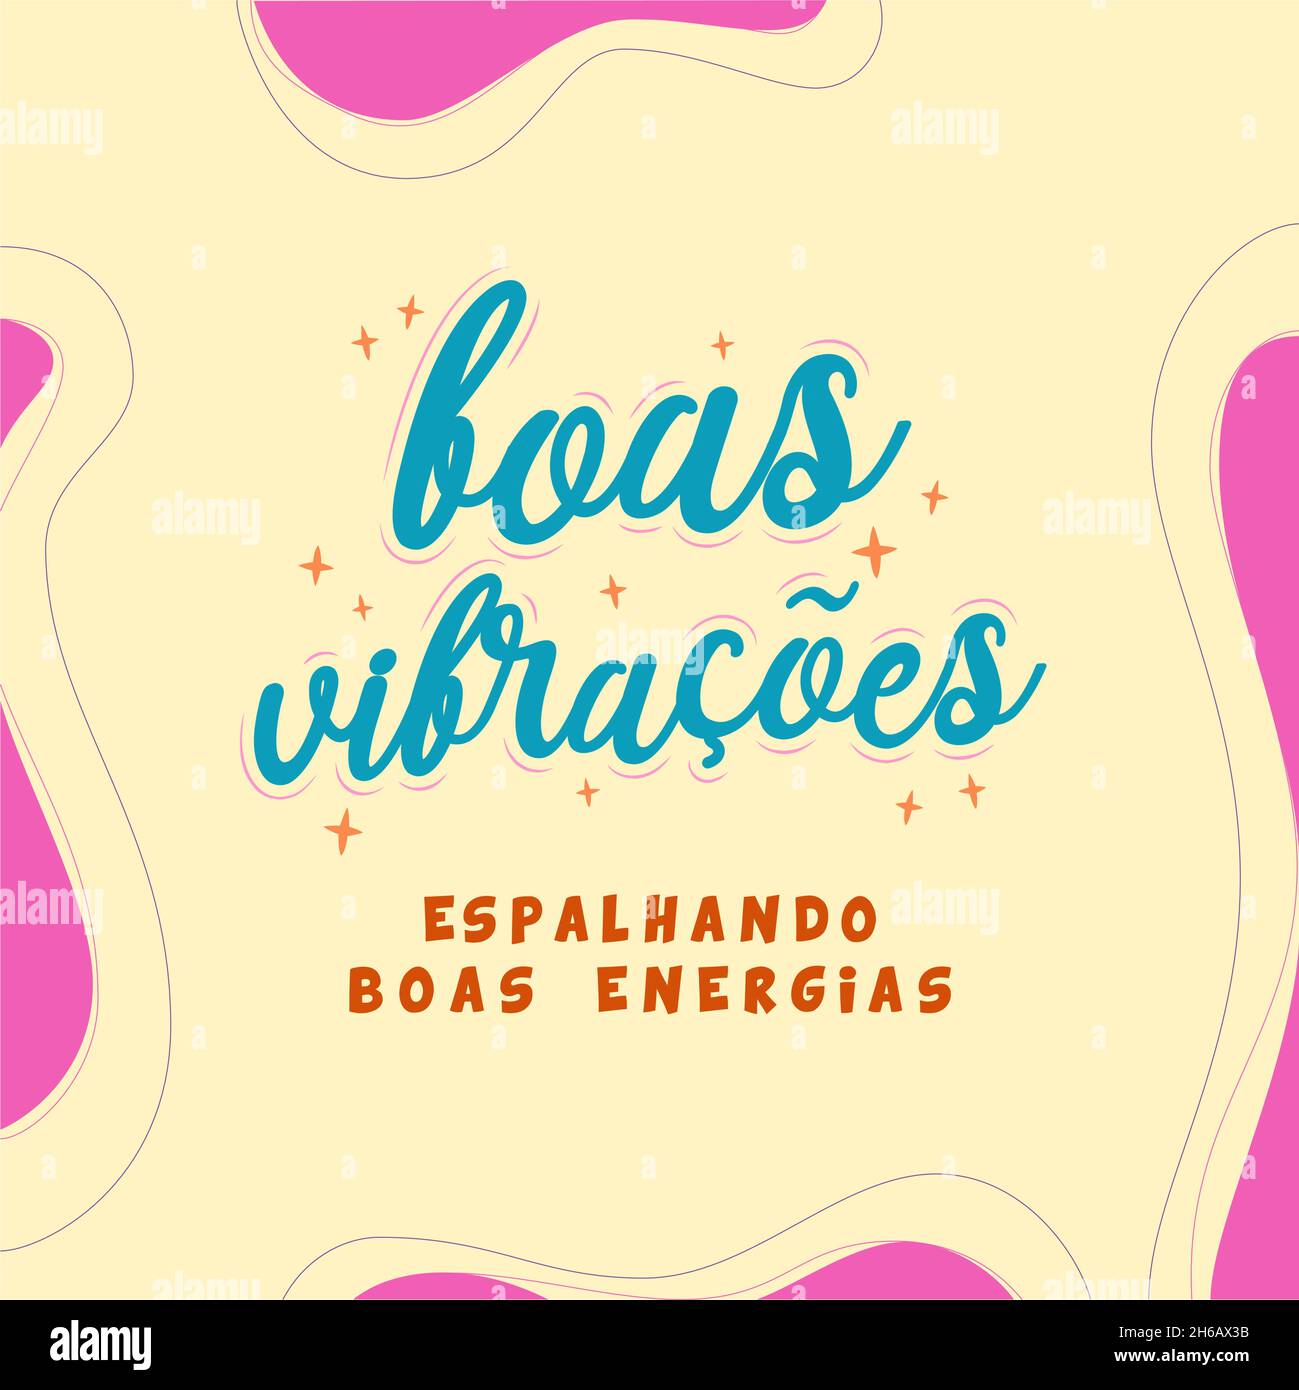 Expression portugaise brésilienne motivationnelle.Translation - bonnes vibrations, diffusion de bonne énergie Illustration de Vecteur